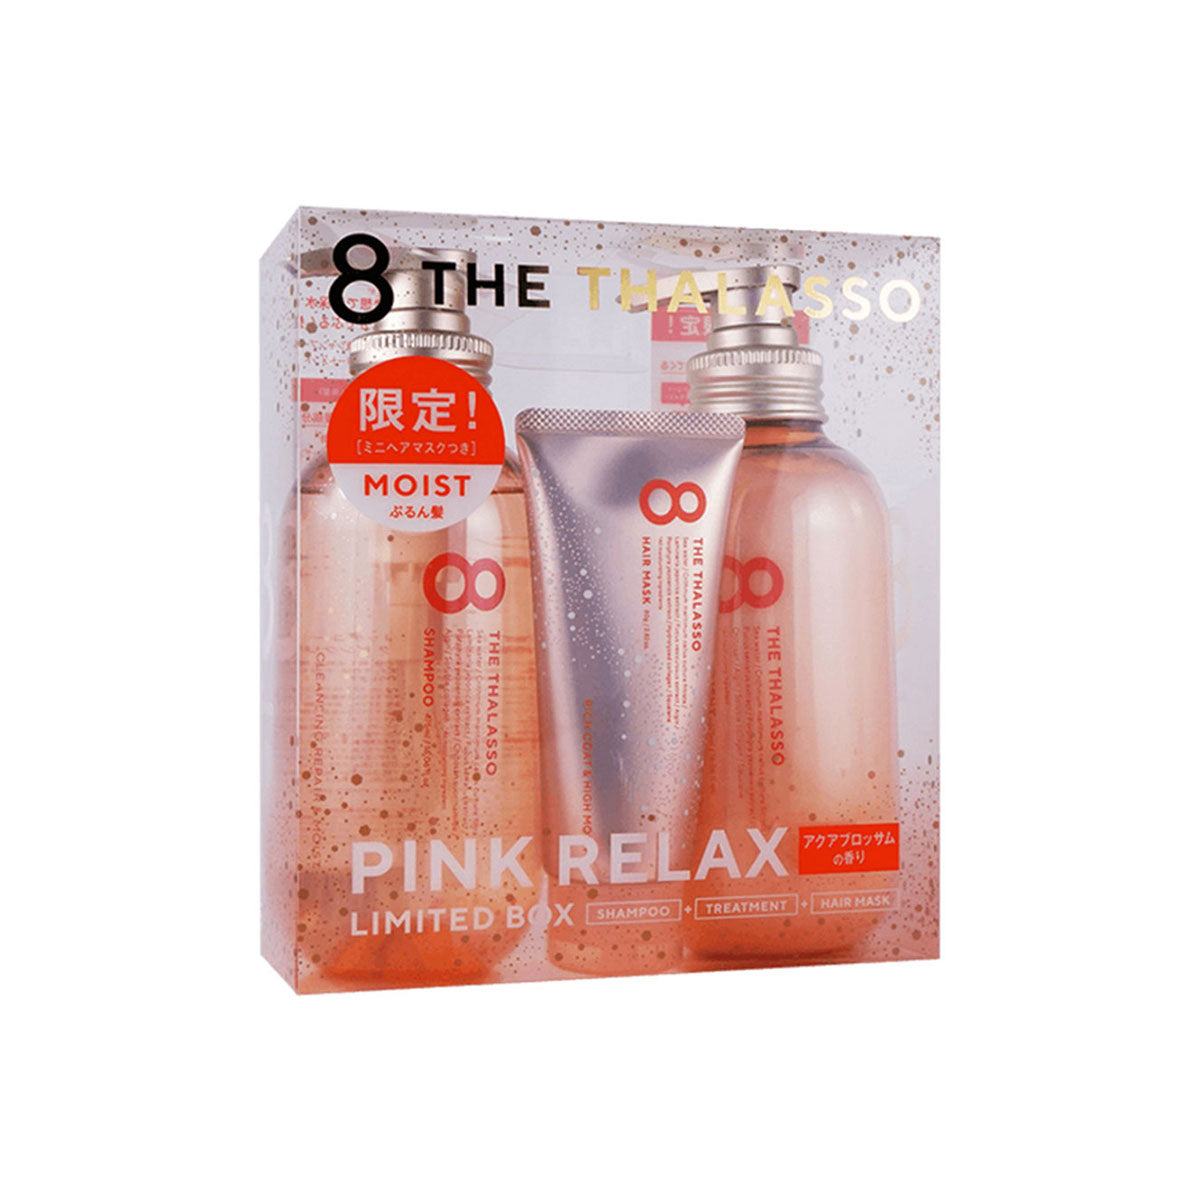 日本 8 THE THALASSO 粉色柔顺头发洗护套组 #保湿型 1套